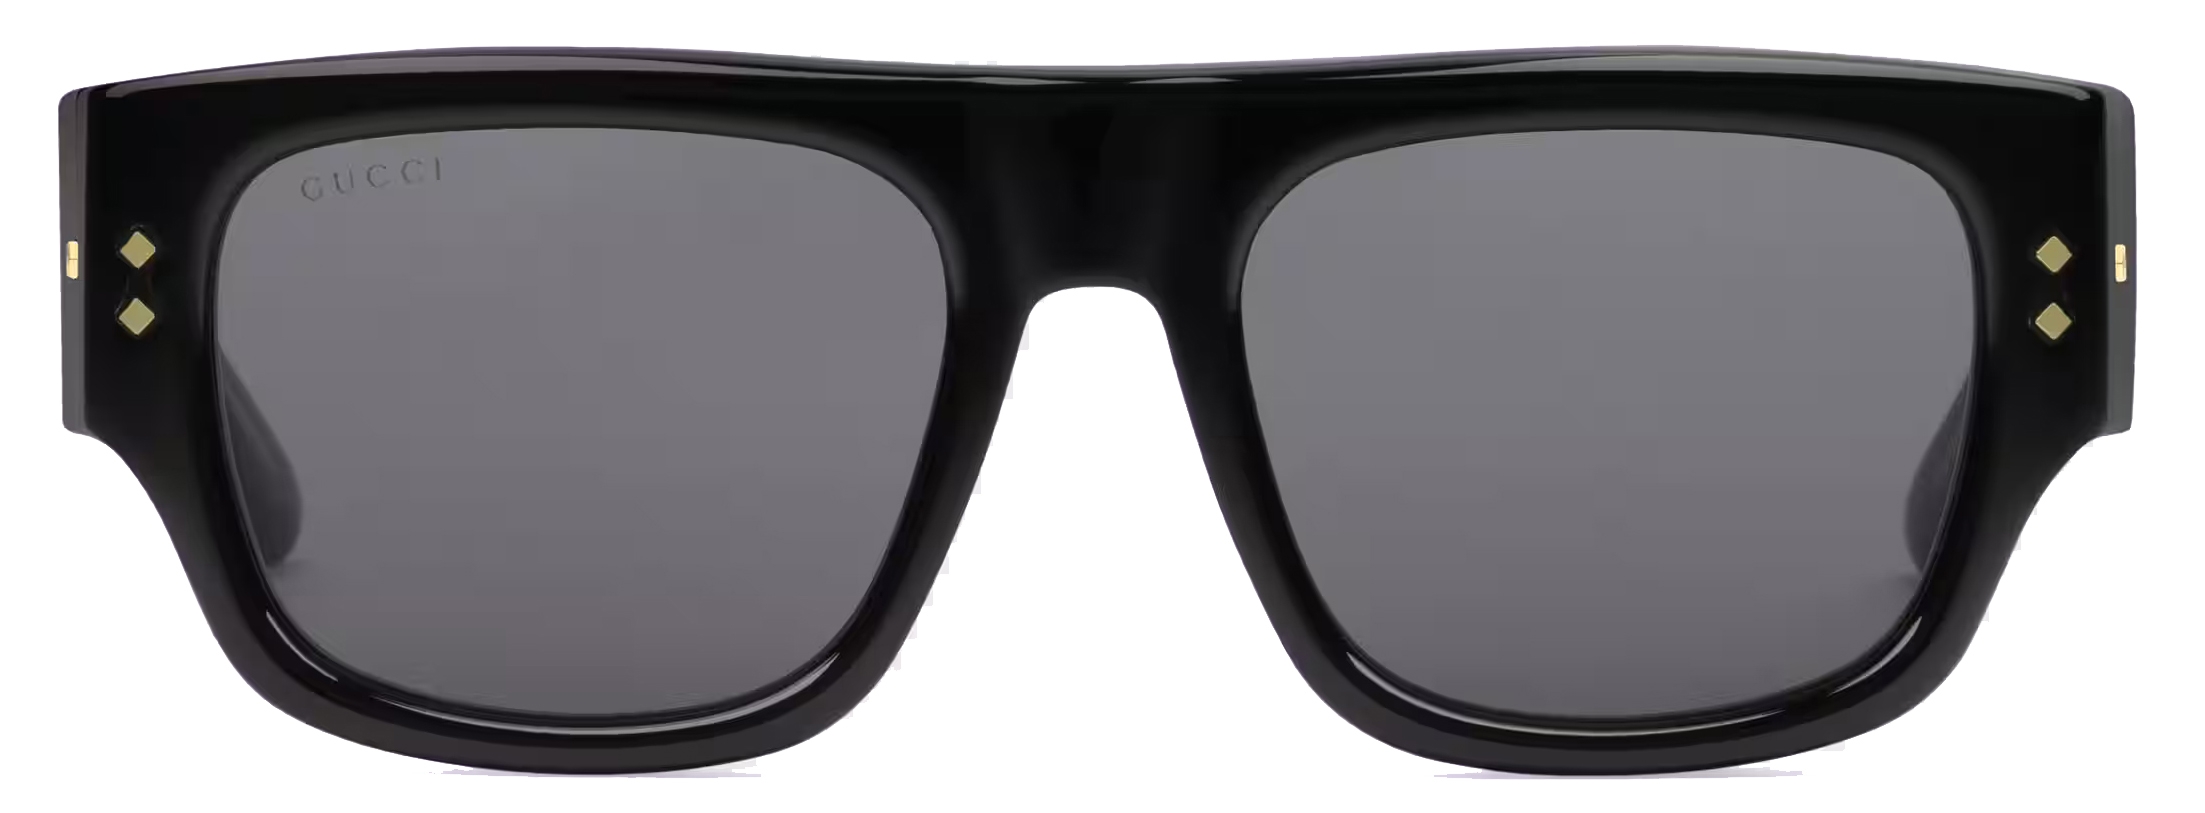 Gucci Green Gradient Square Sunglasses GG0178S 001 54 889652093345 -  Sunglasses - Jomashop